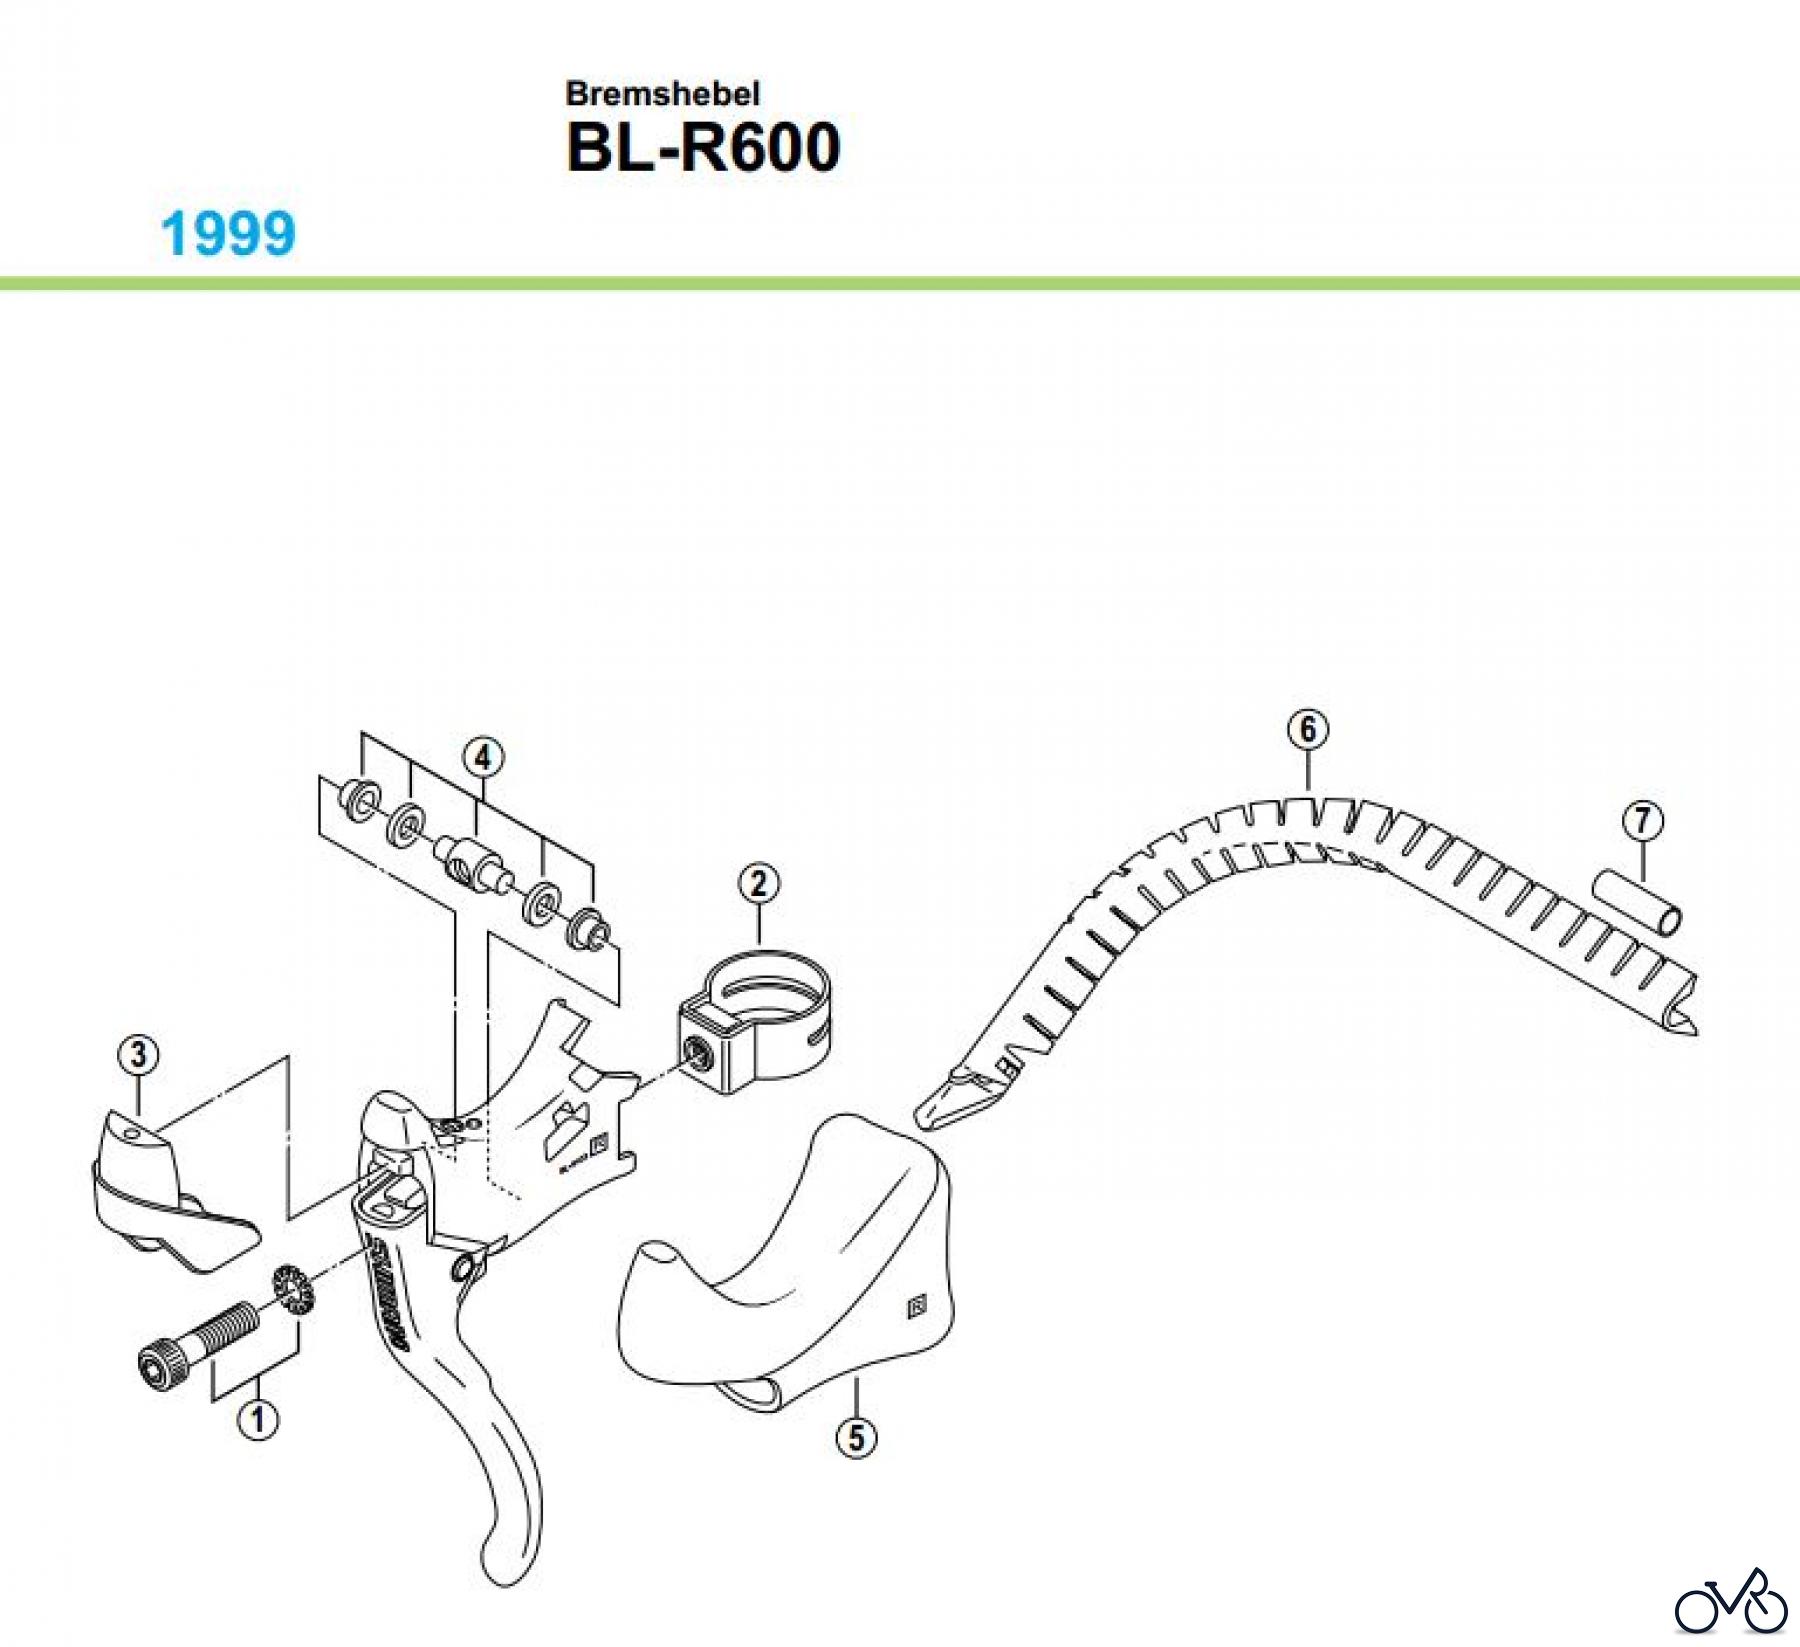  Shimano BL Brake Lever - Bremshebel BL-R600-99